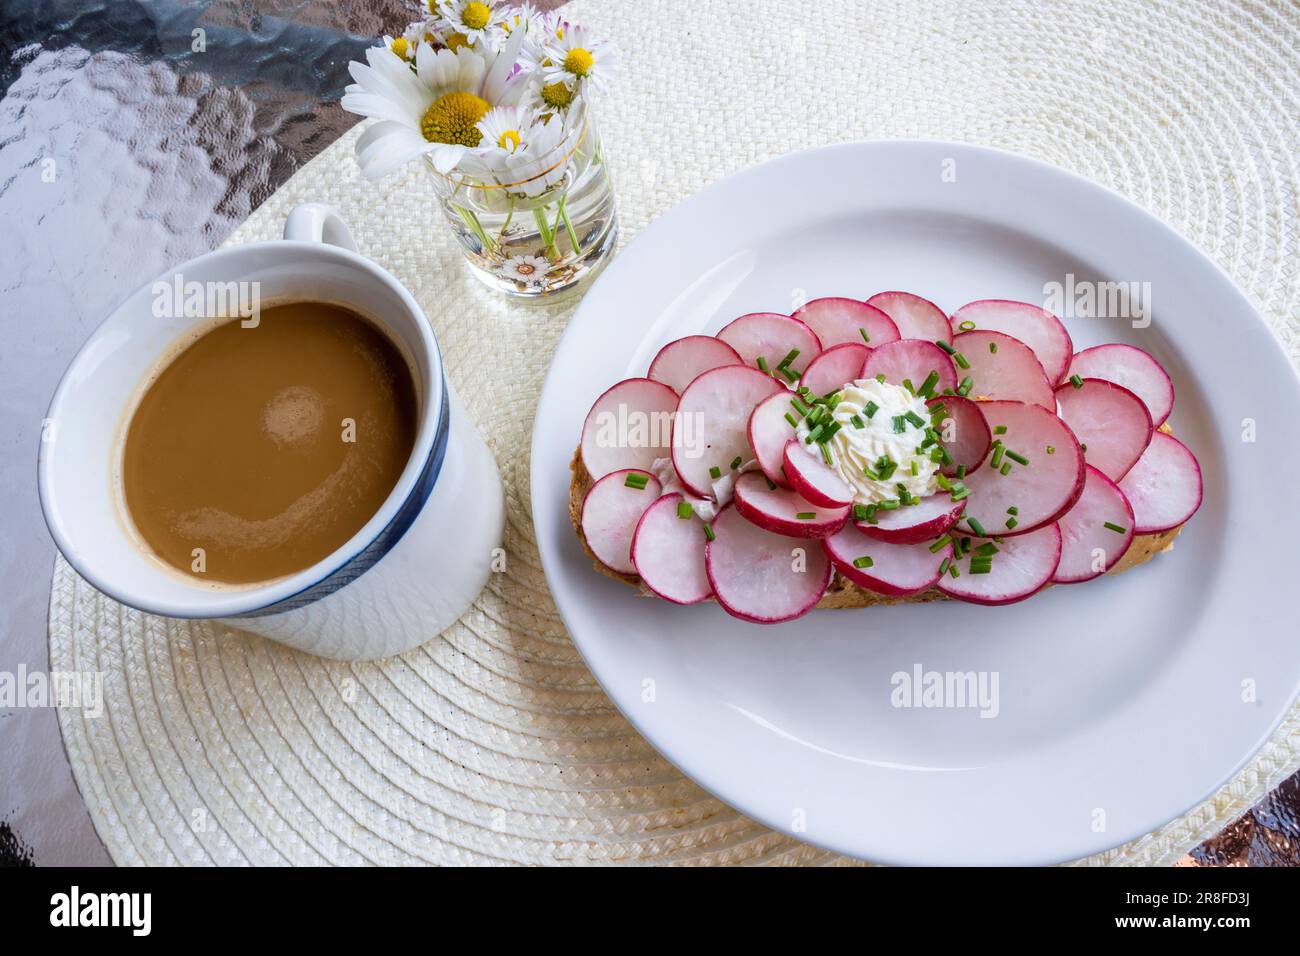 Brot garniert mit Radieschen auf weißem Teller, eine Tasse Kaffee, Blumen auf dem Tisch. Stockfoto